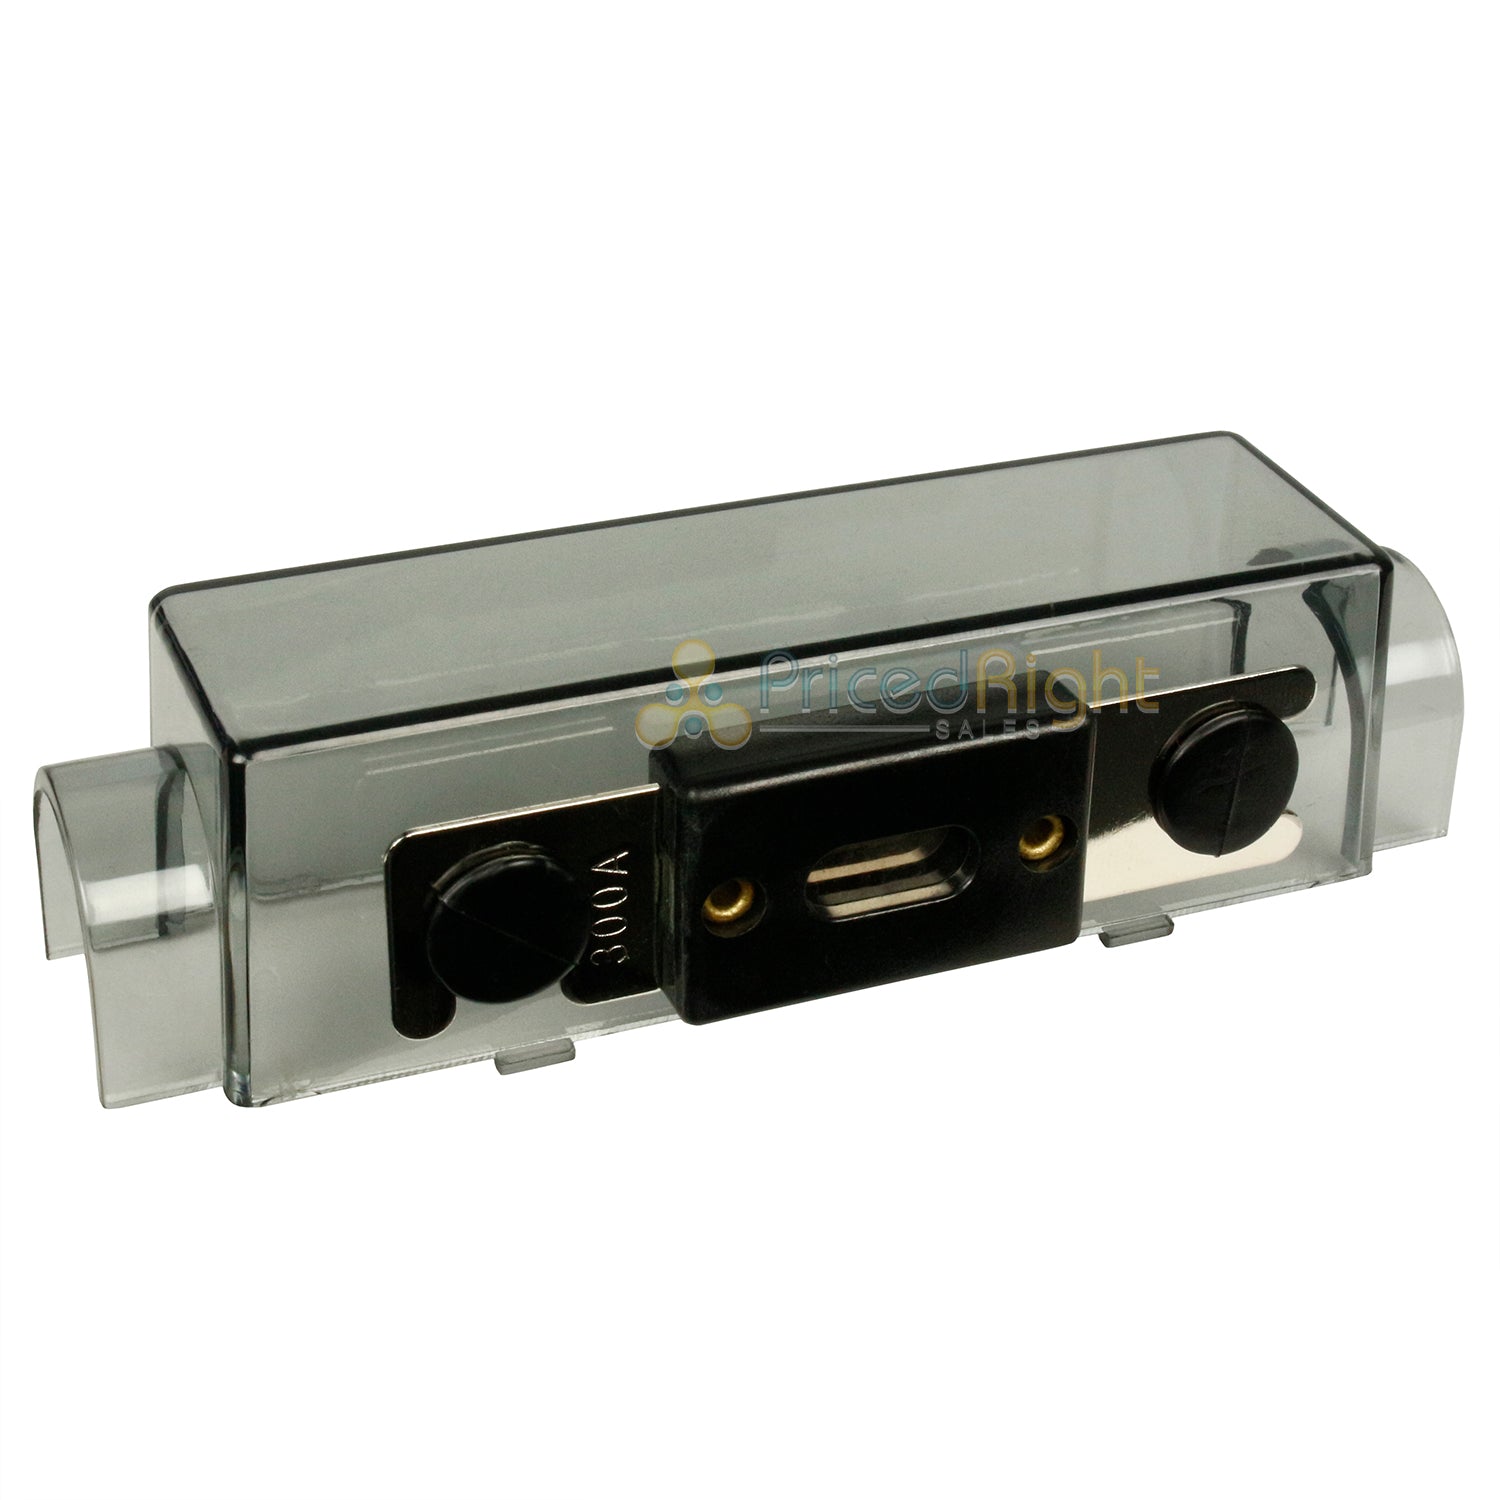 Inline ANL Fuse Holder Block with Spare Fuse Storage Car Audio Amp RI Audio